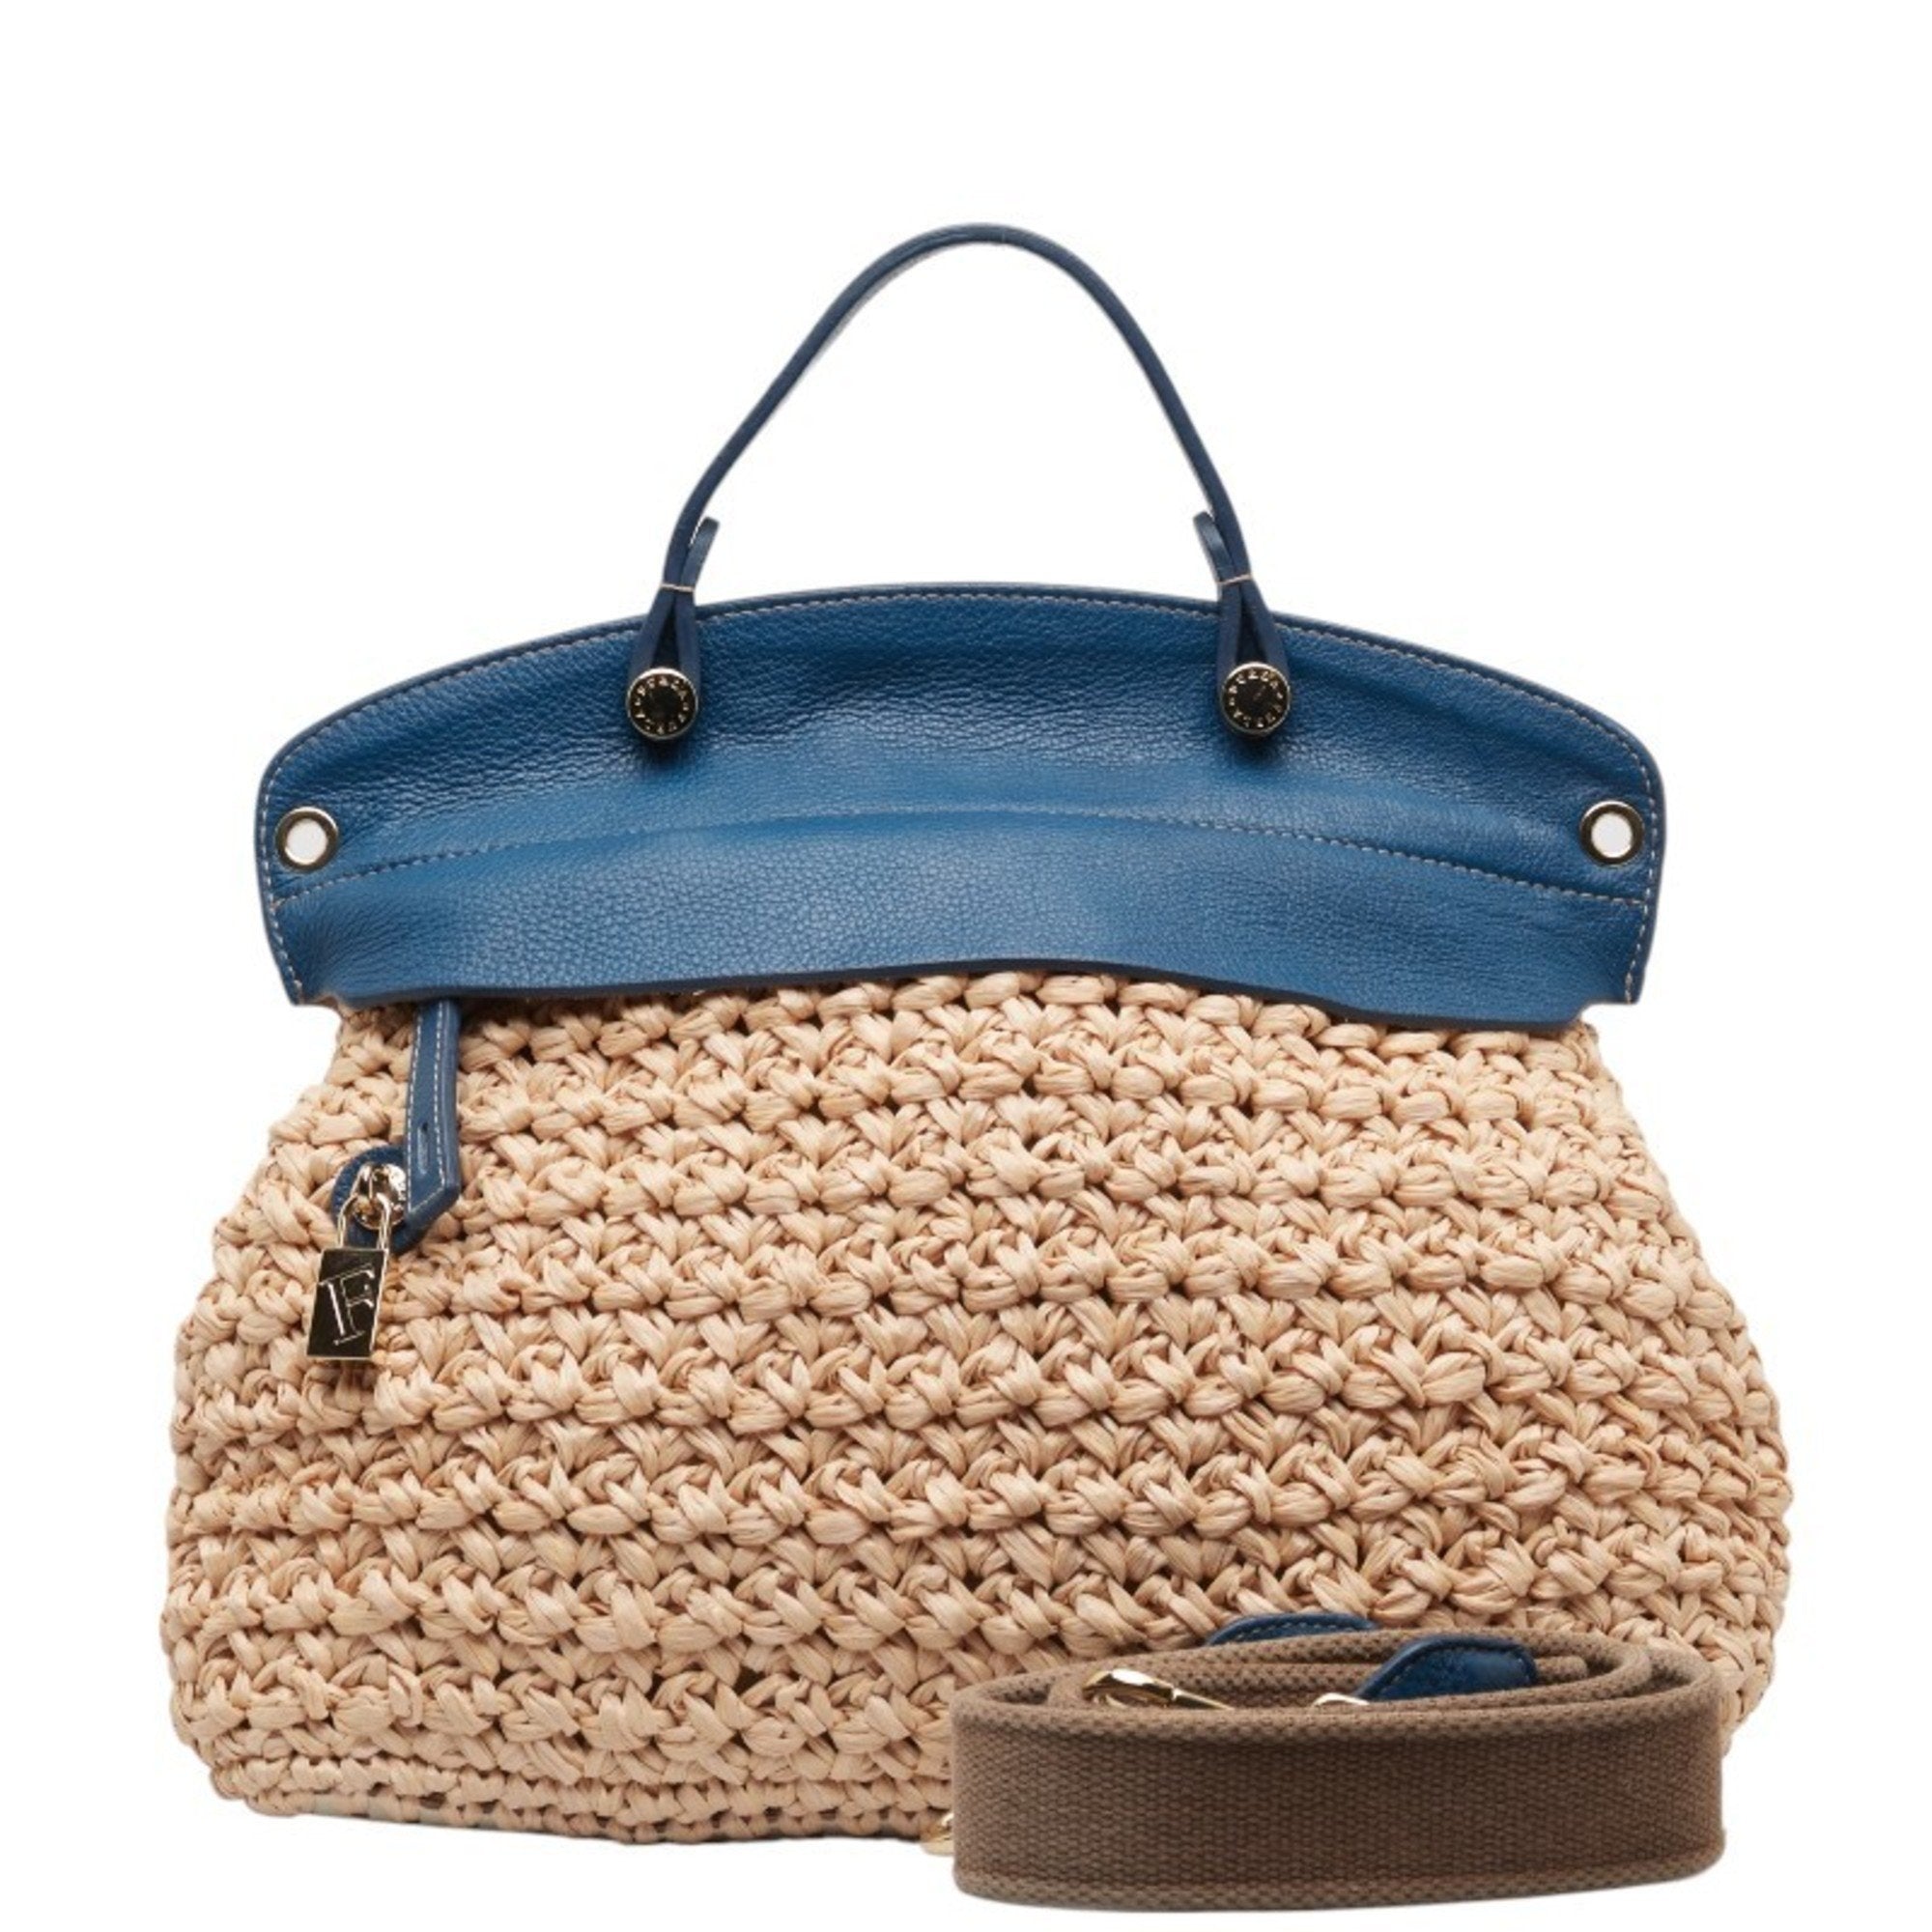 Handbag Shoulder Bag Blue Leather Women's